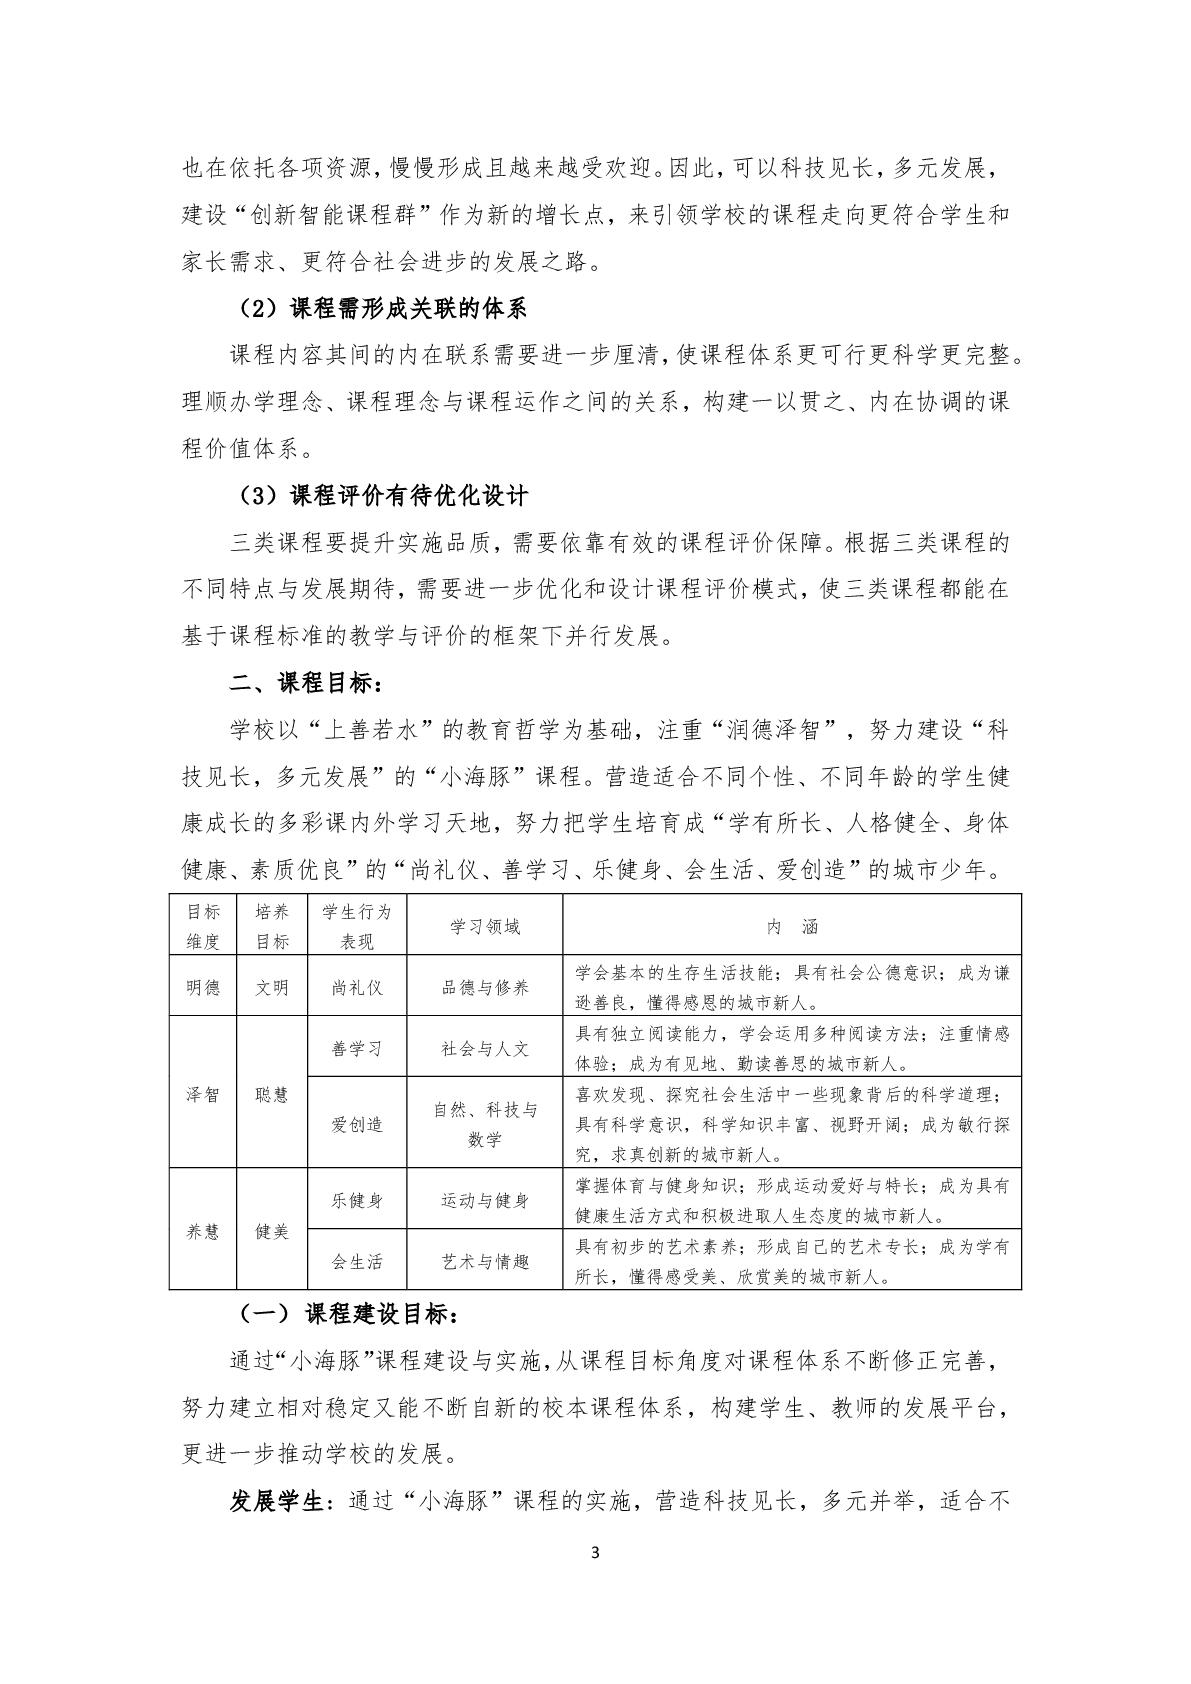 2.上海市嘉定区清水路小学2020学年度课程计划-003.jpg